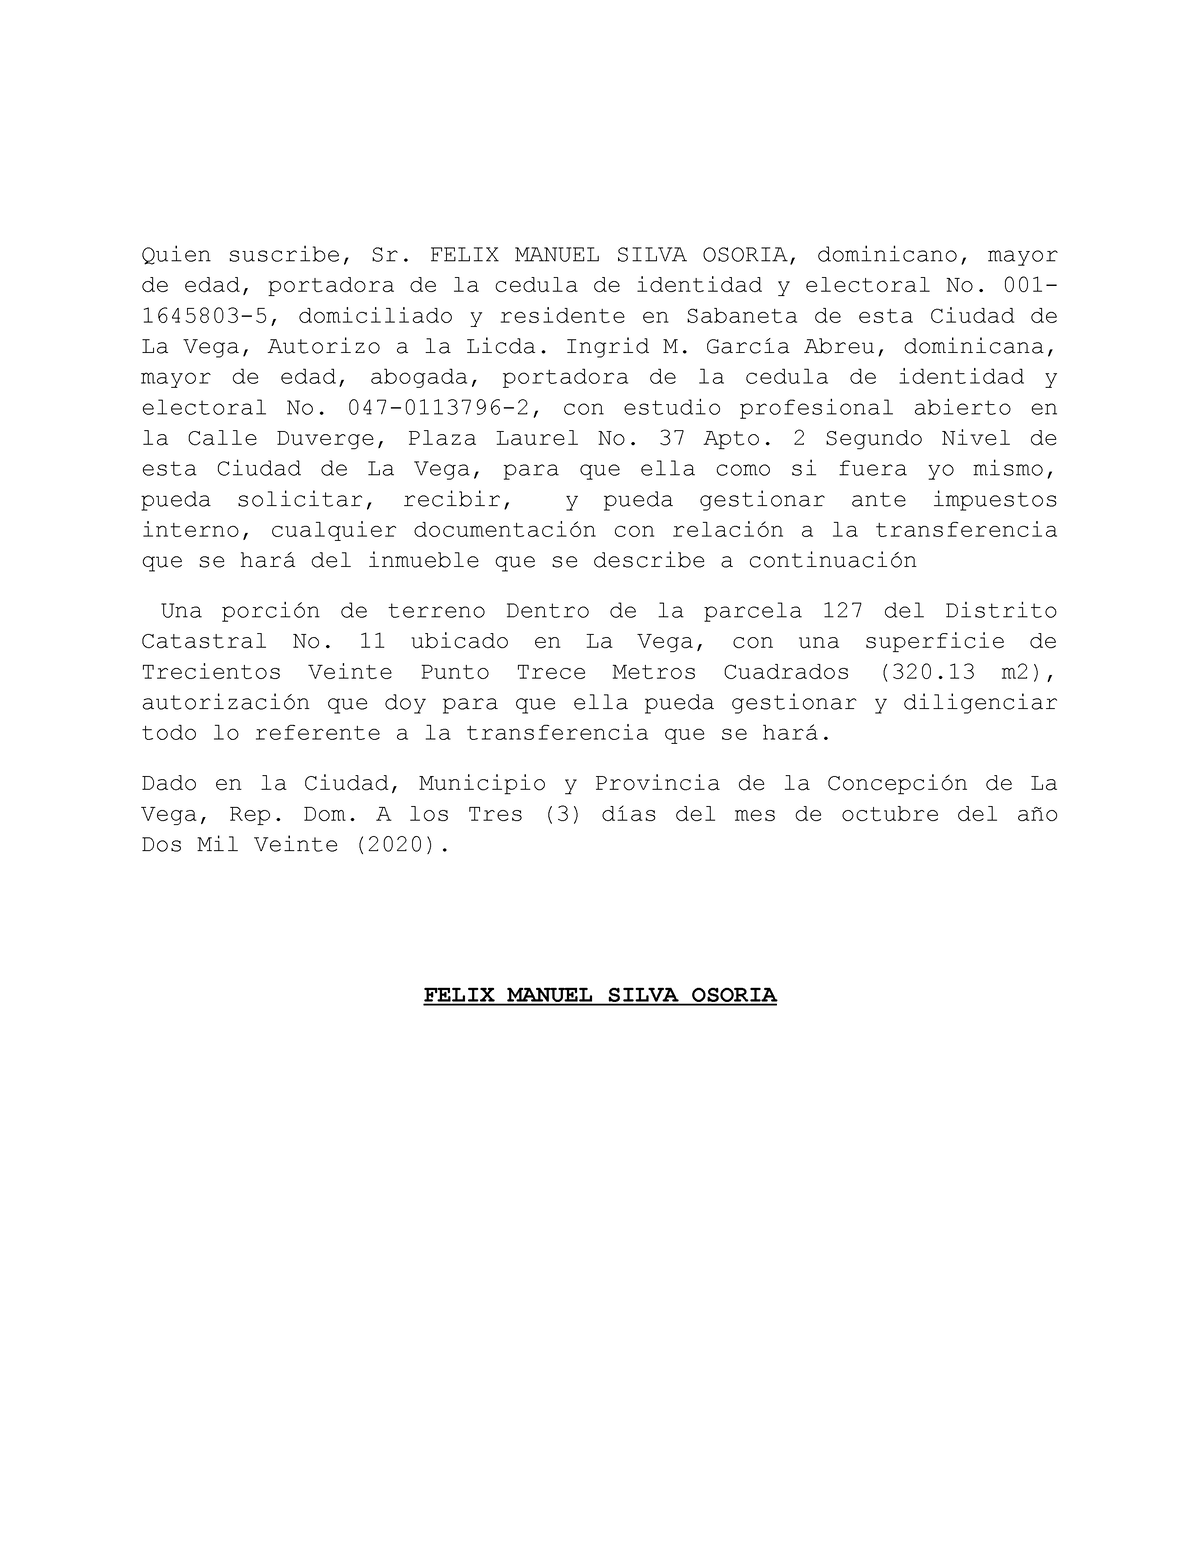 Autorizacion impuestos interno Felix Manuel Silva - Quien suscribe, Sr ...